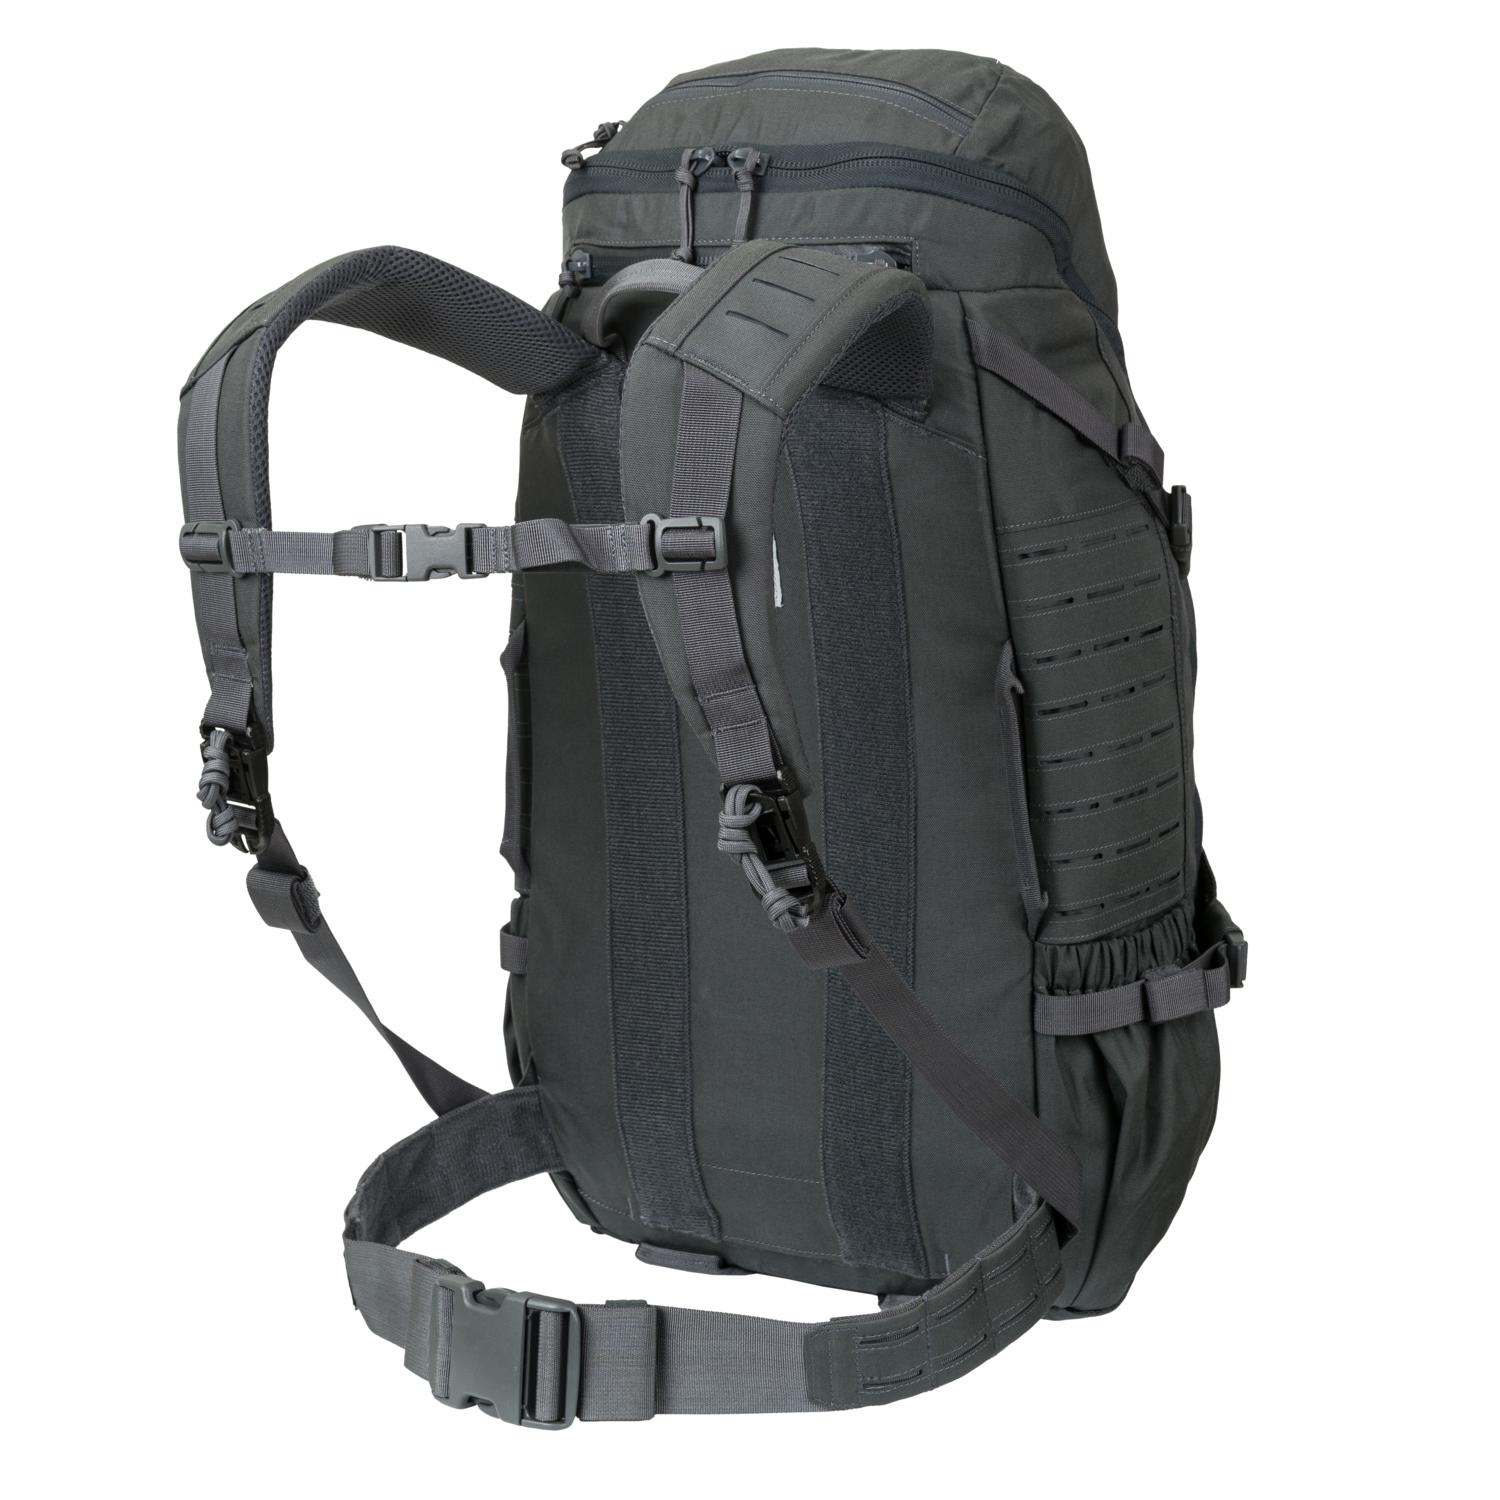 Halifax Medium Backpack 24,8 x 7,9 x 12,2"